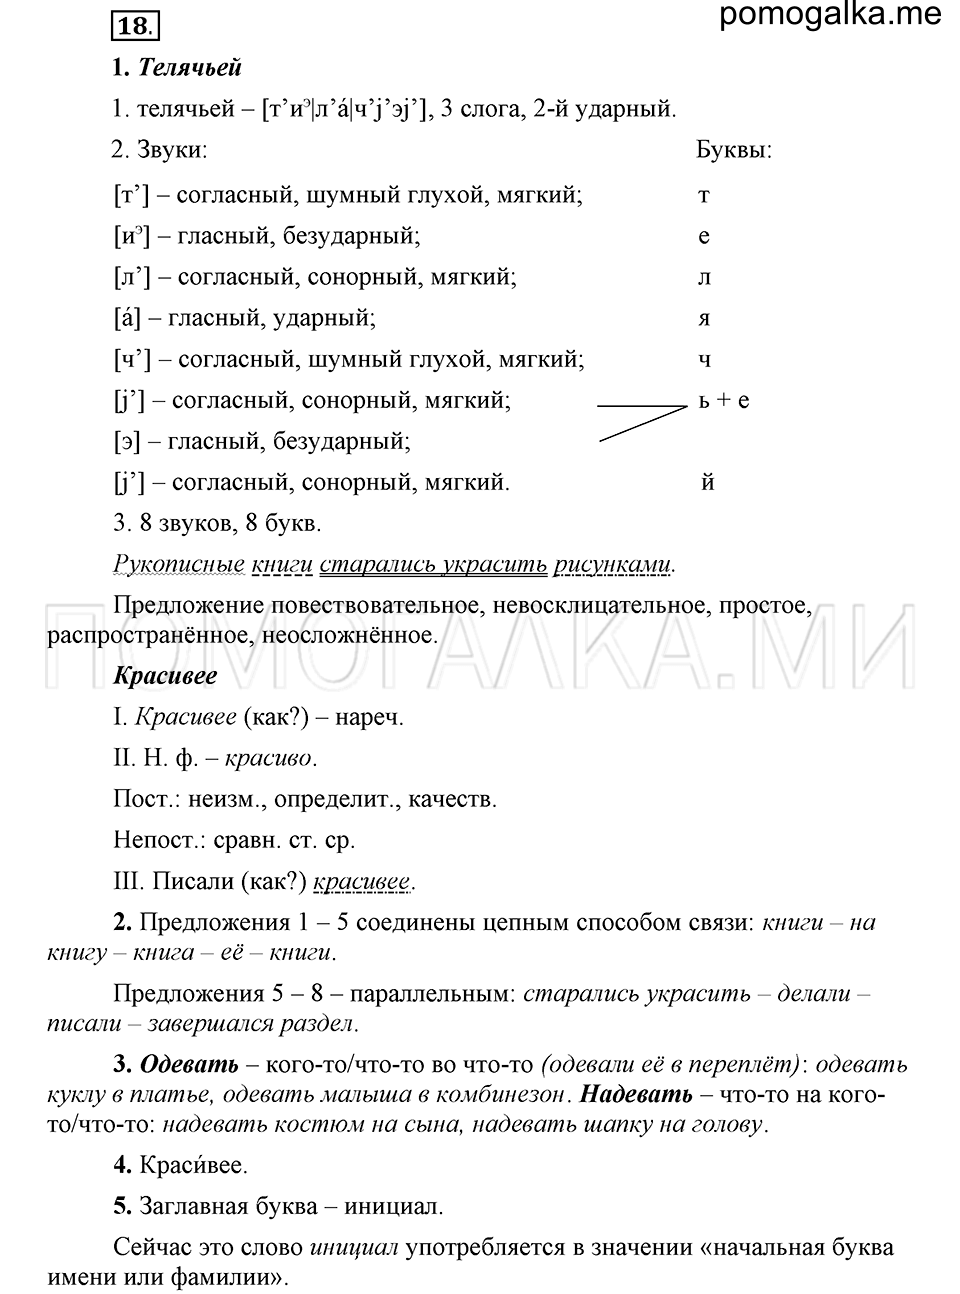 упражнение 18 русский язык 6 класс Быстрова, Кибирева 1 часть 2019 год